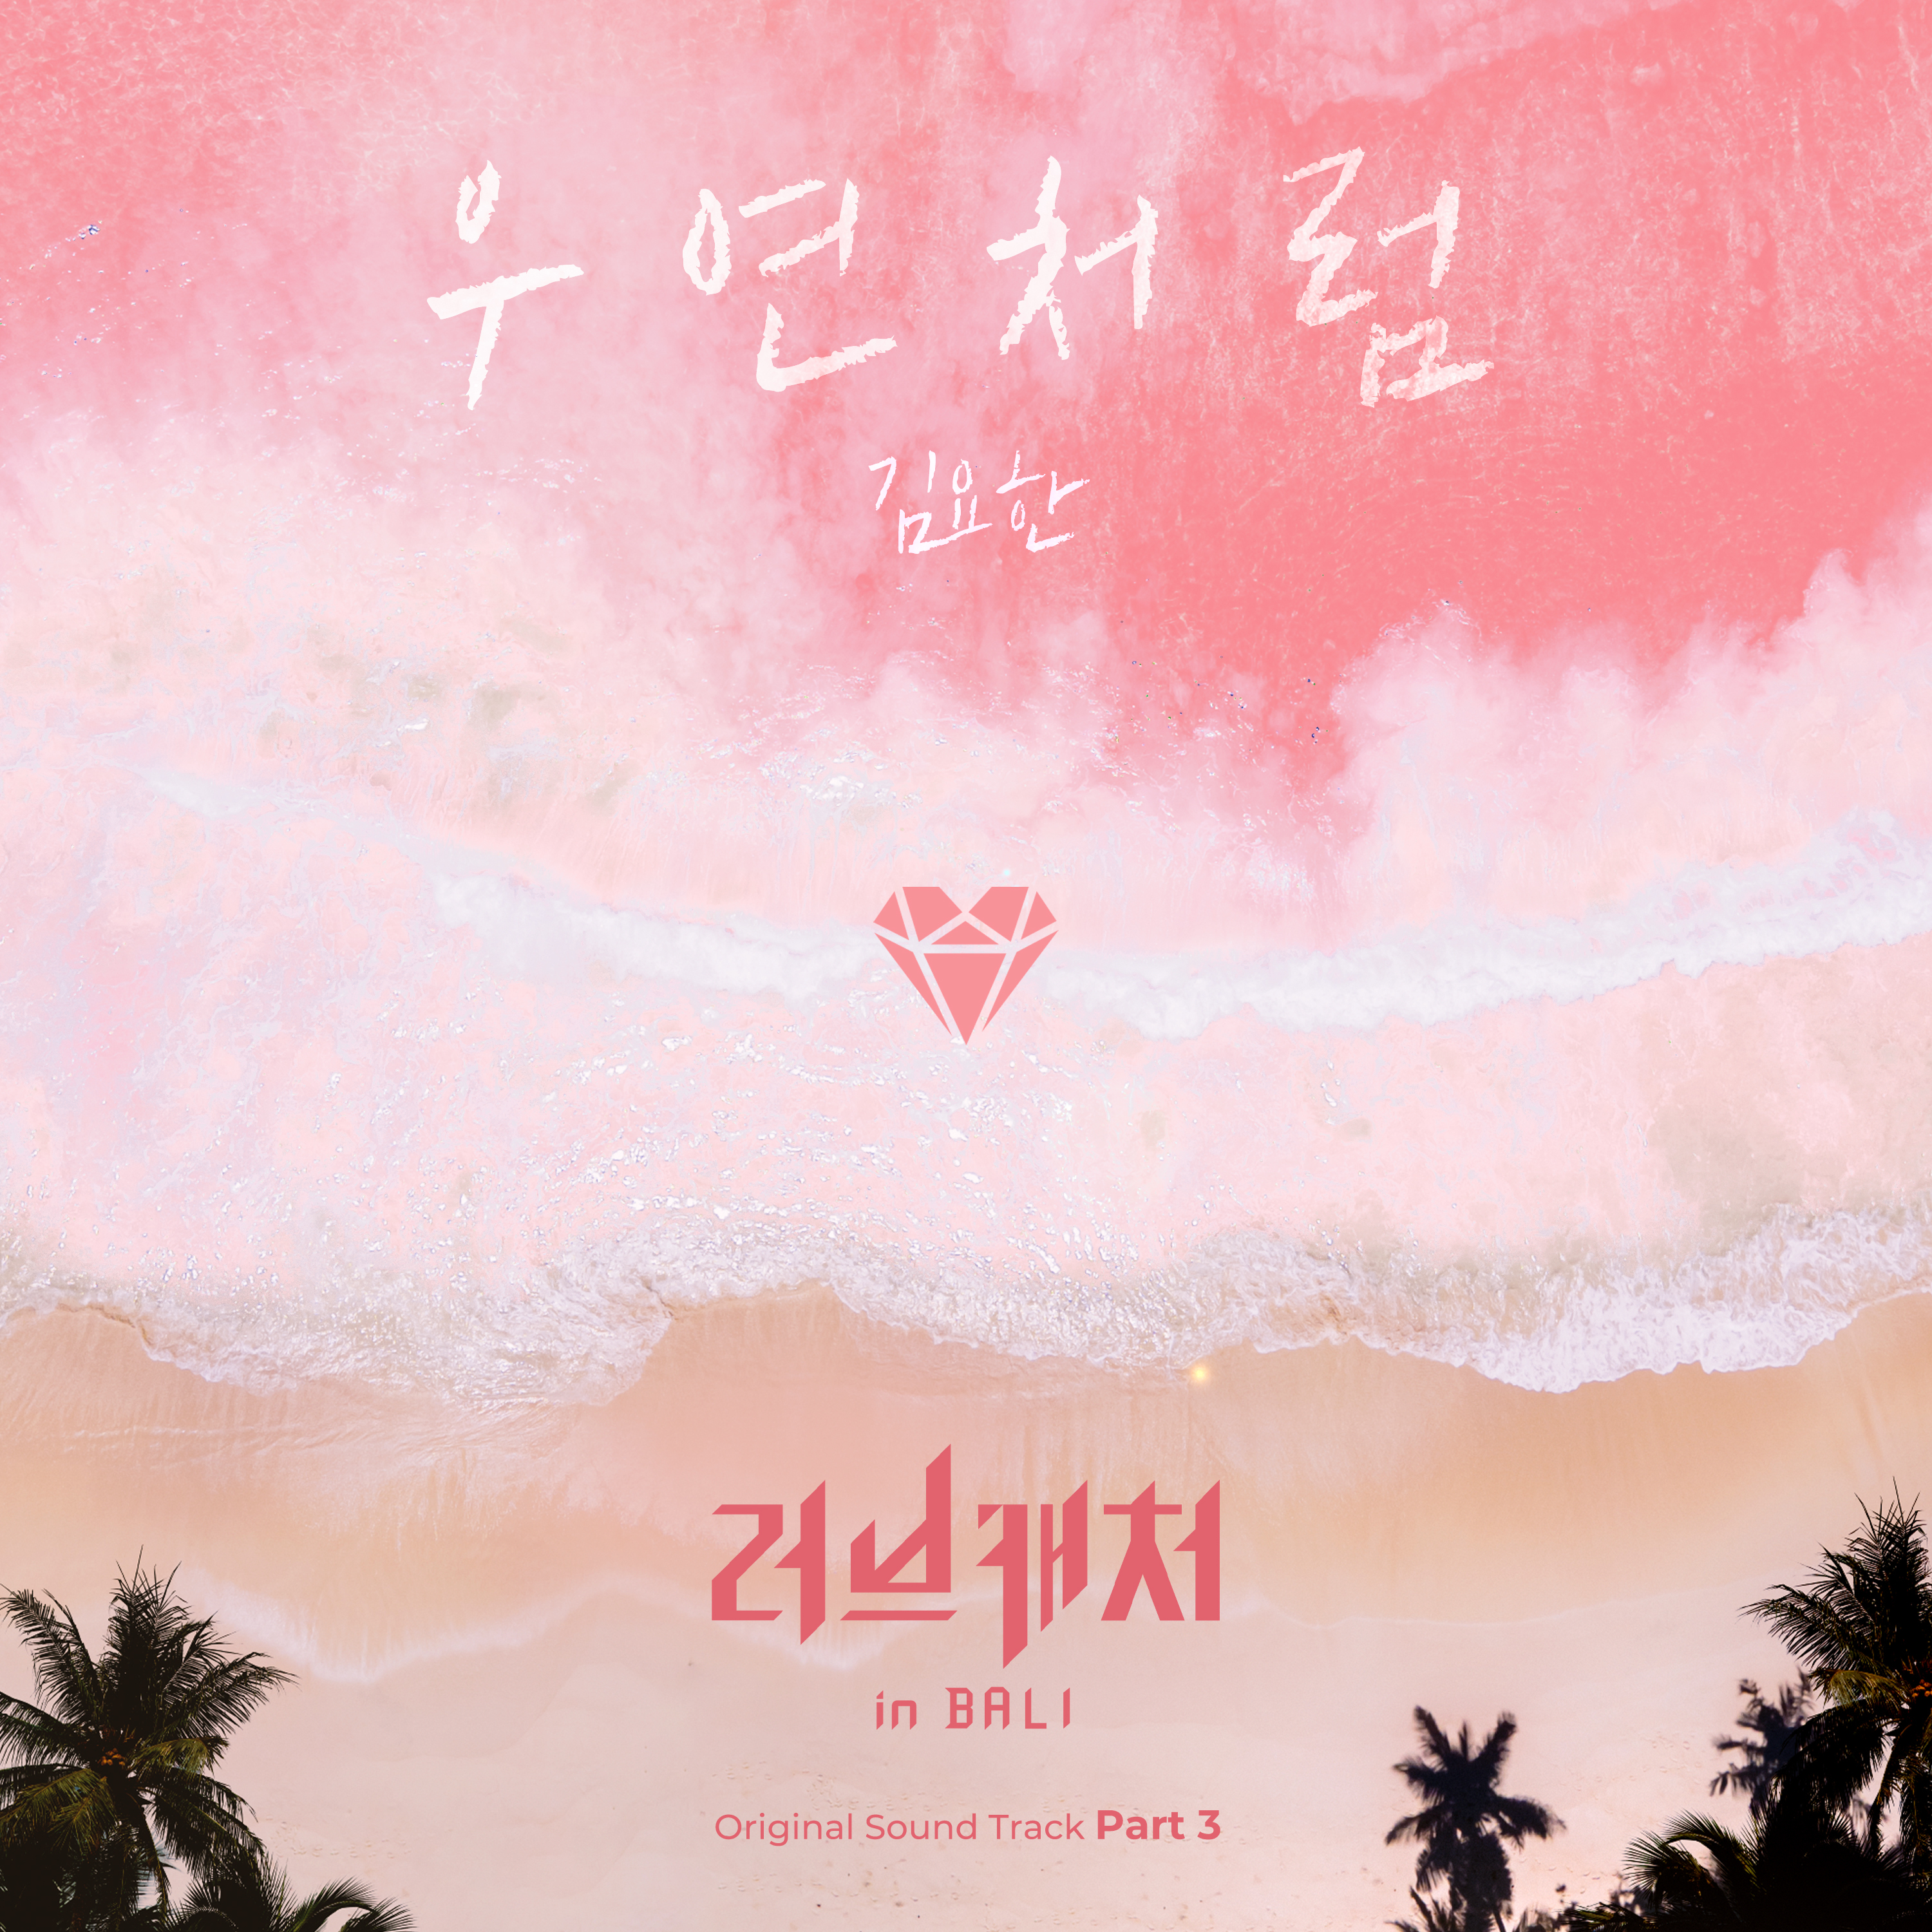 [影音] 戀愛捕手 in Bali OST Part.3 - 金曜漢